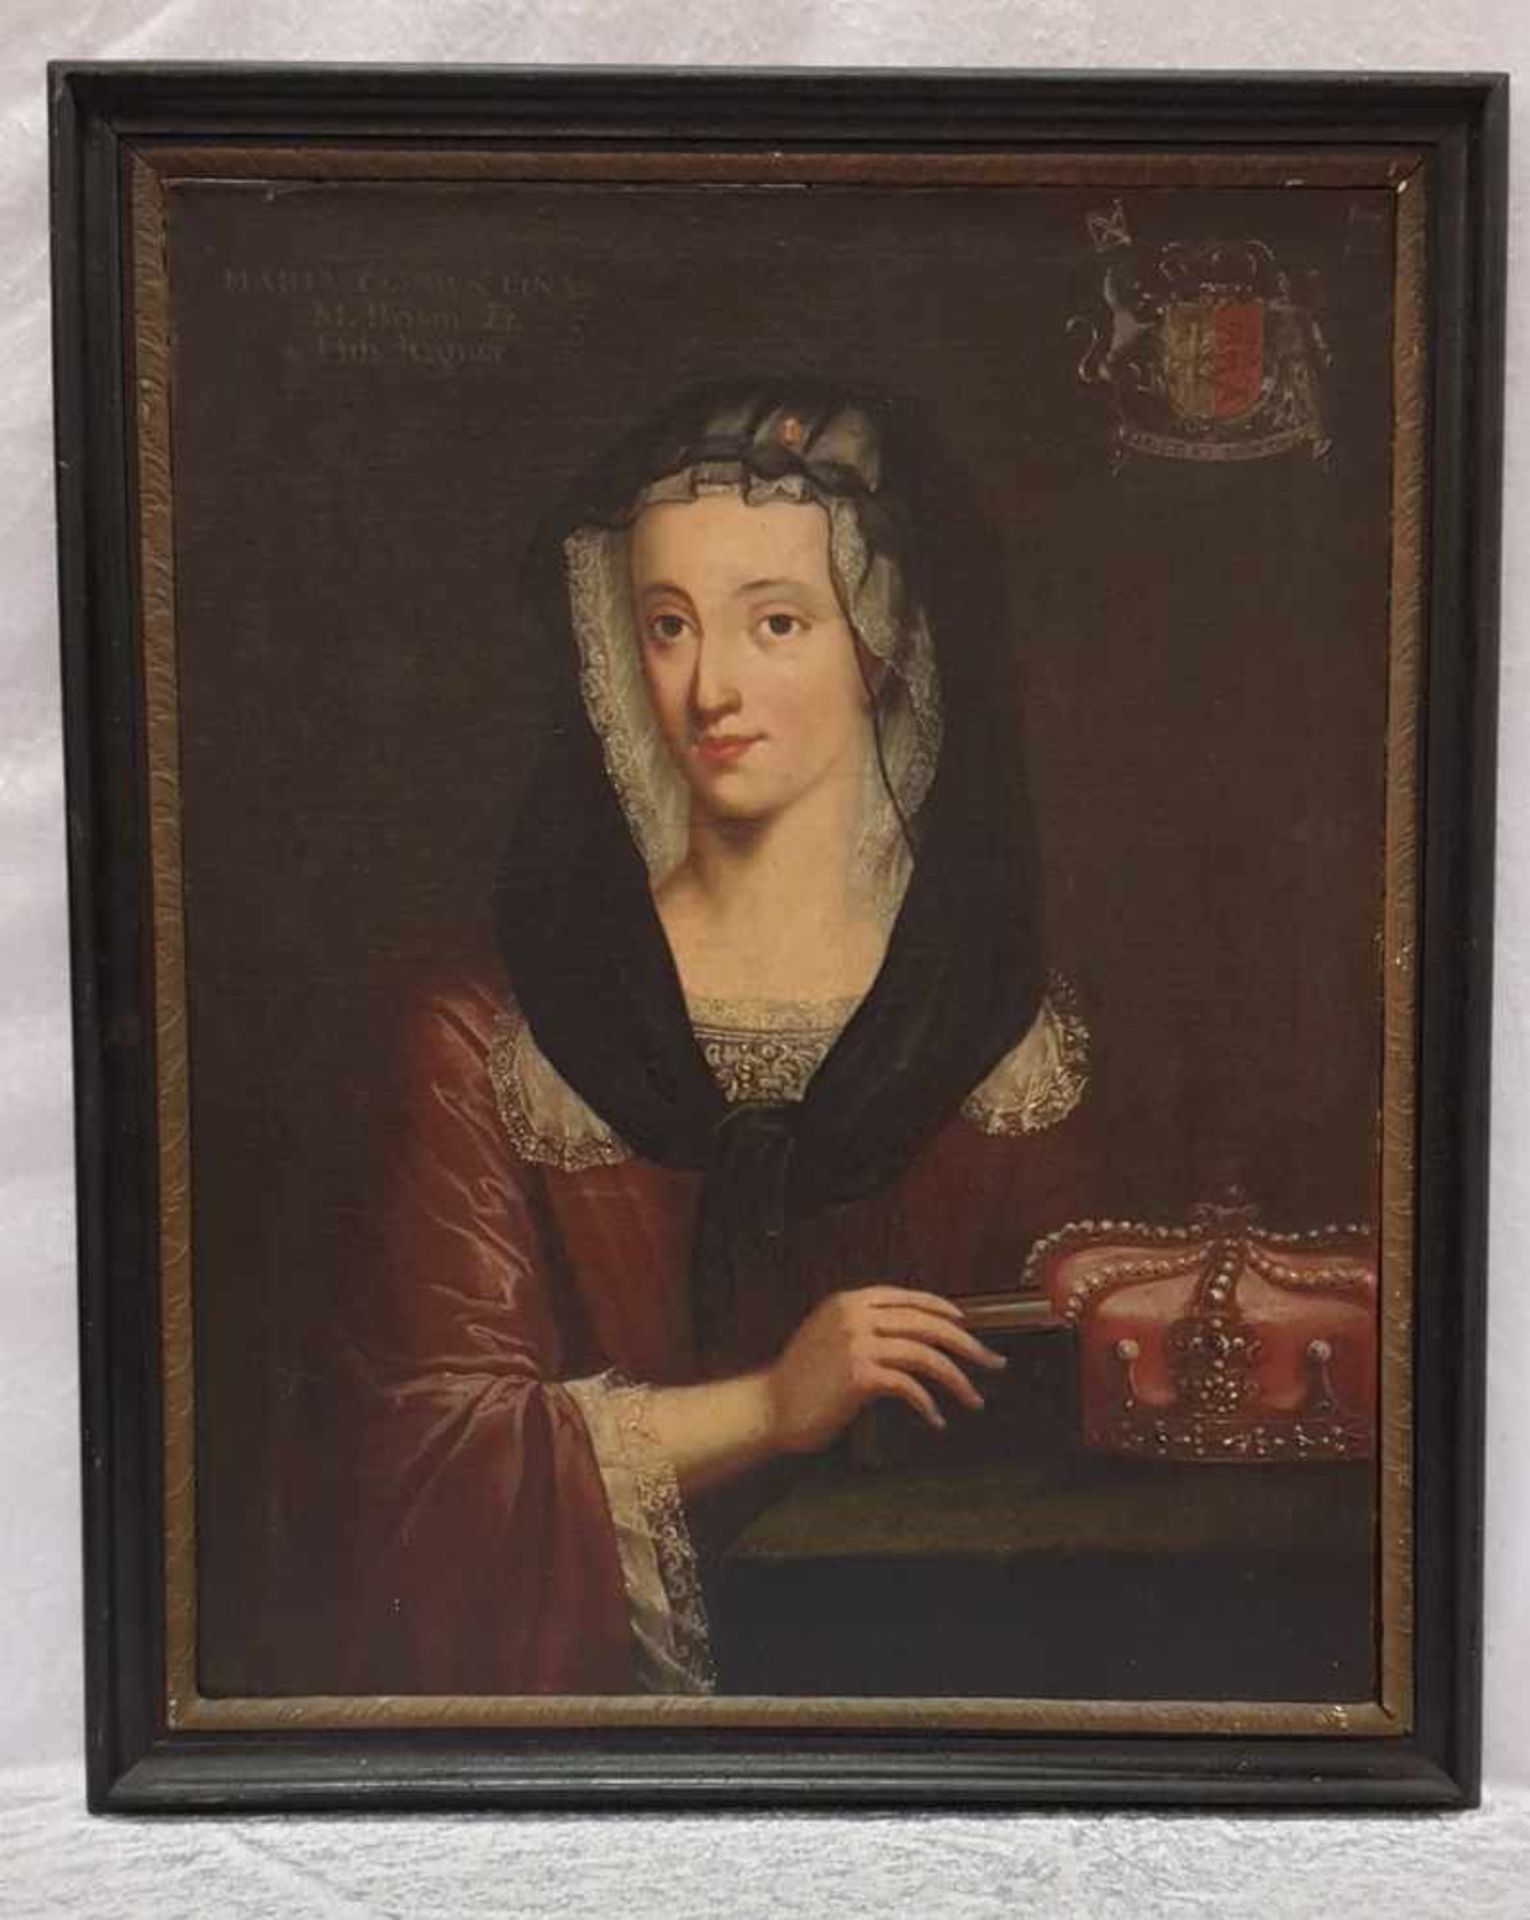 Bildinis Maria Clementina Sobieska , Titualkönigin von England, Öl auf Leinwand, 18. Jahrhundert, - Bild 3 aus 3